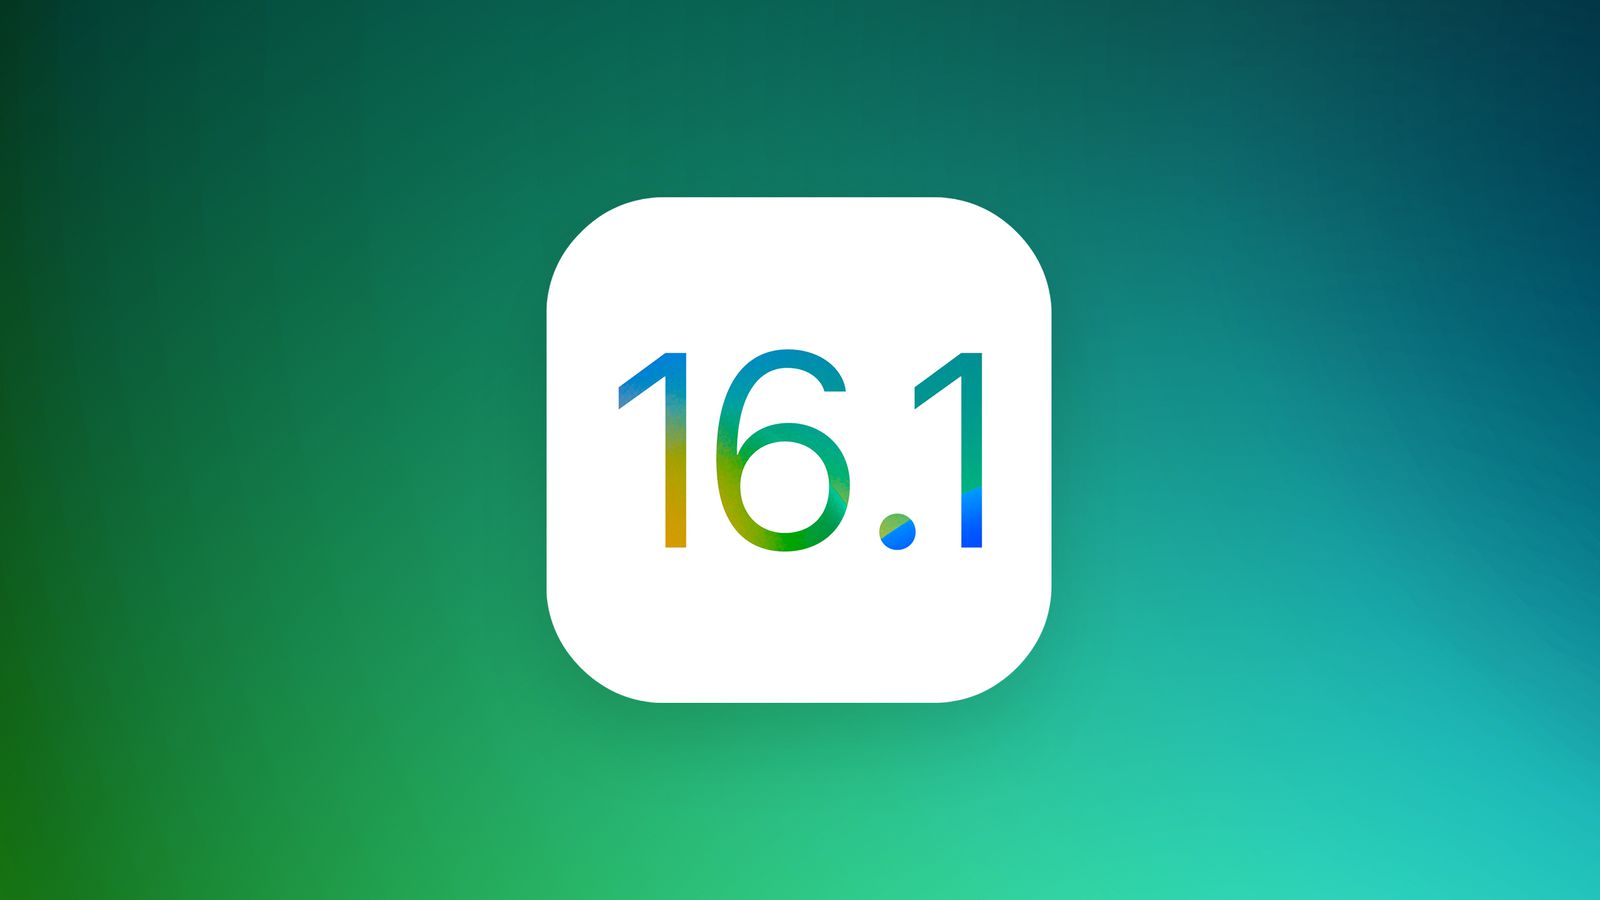 Apple выпустила iOS 16.1 beta 1 для разработчиков